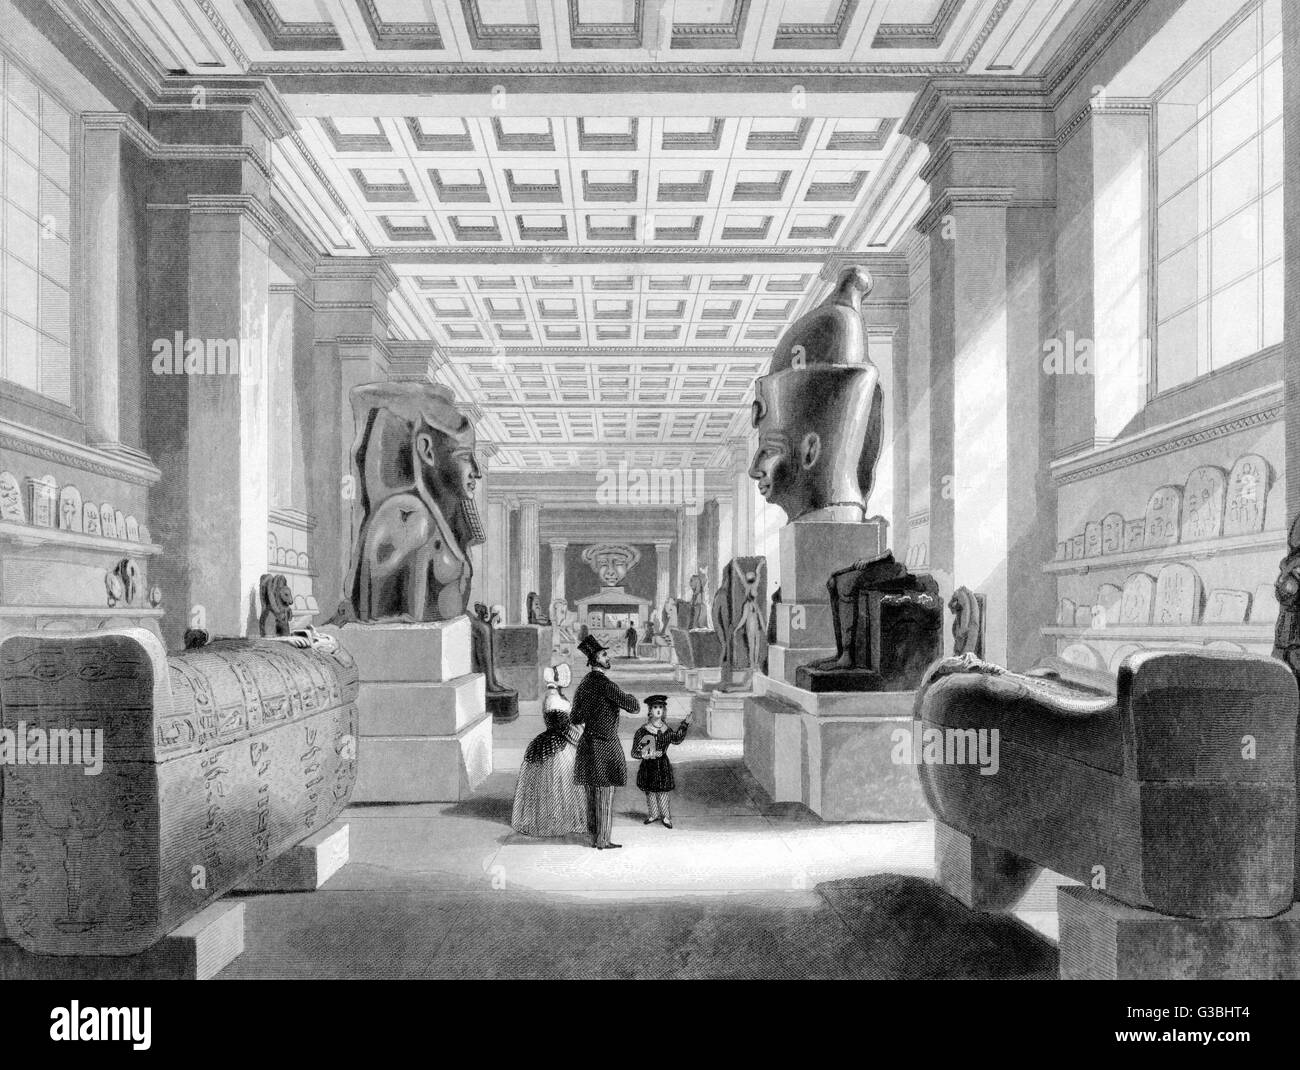 La salle égyptienne, dans le nouveau Smirke bâtiments pour les collections en évolution. Date : vers 1840 Banque D'Images